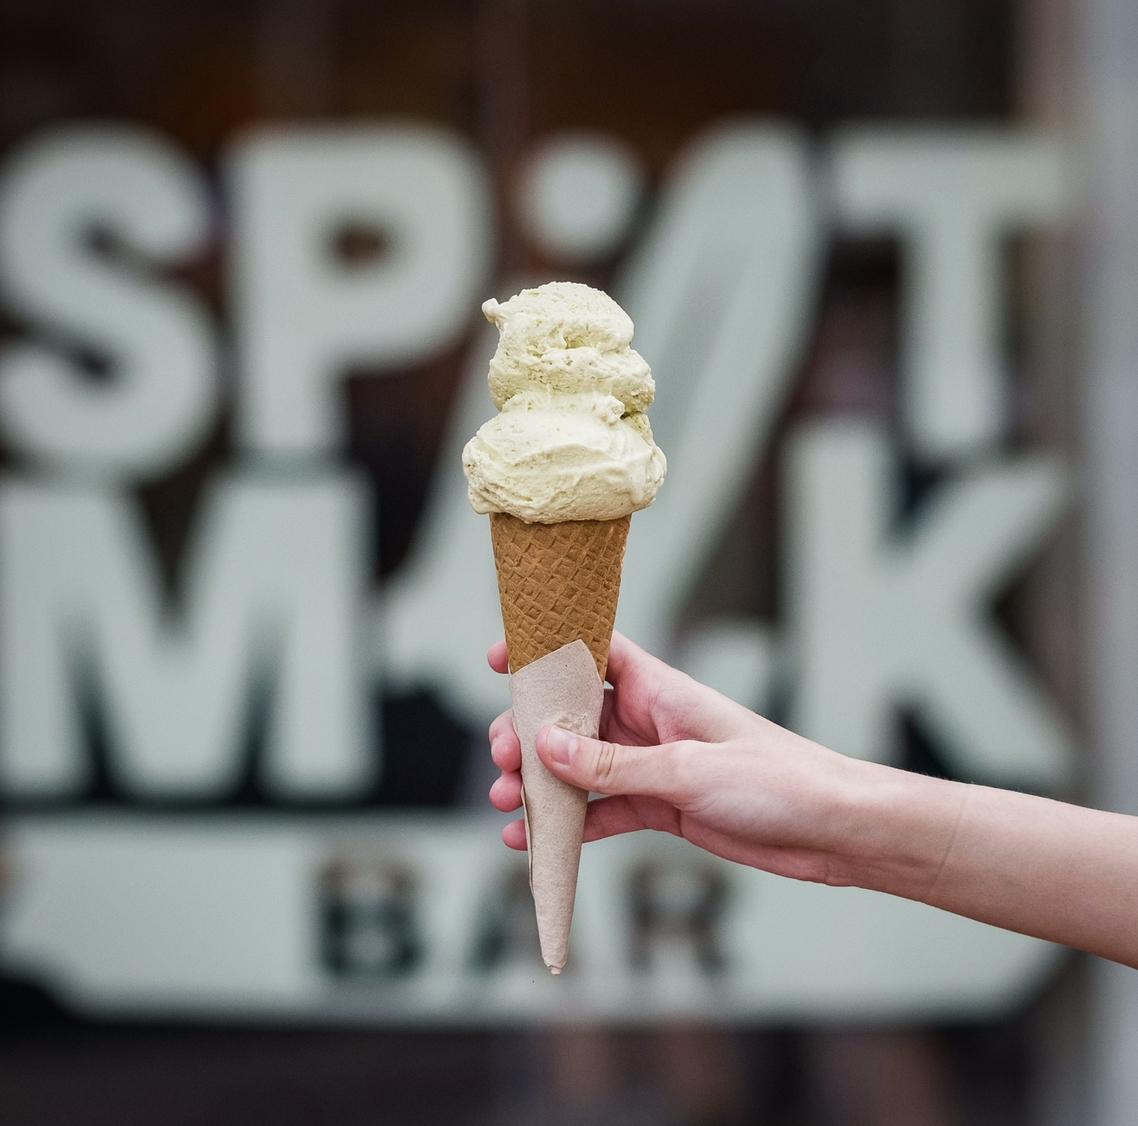 Ice cream cone in front of Spilt Milk sign